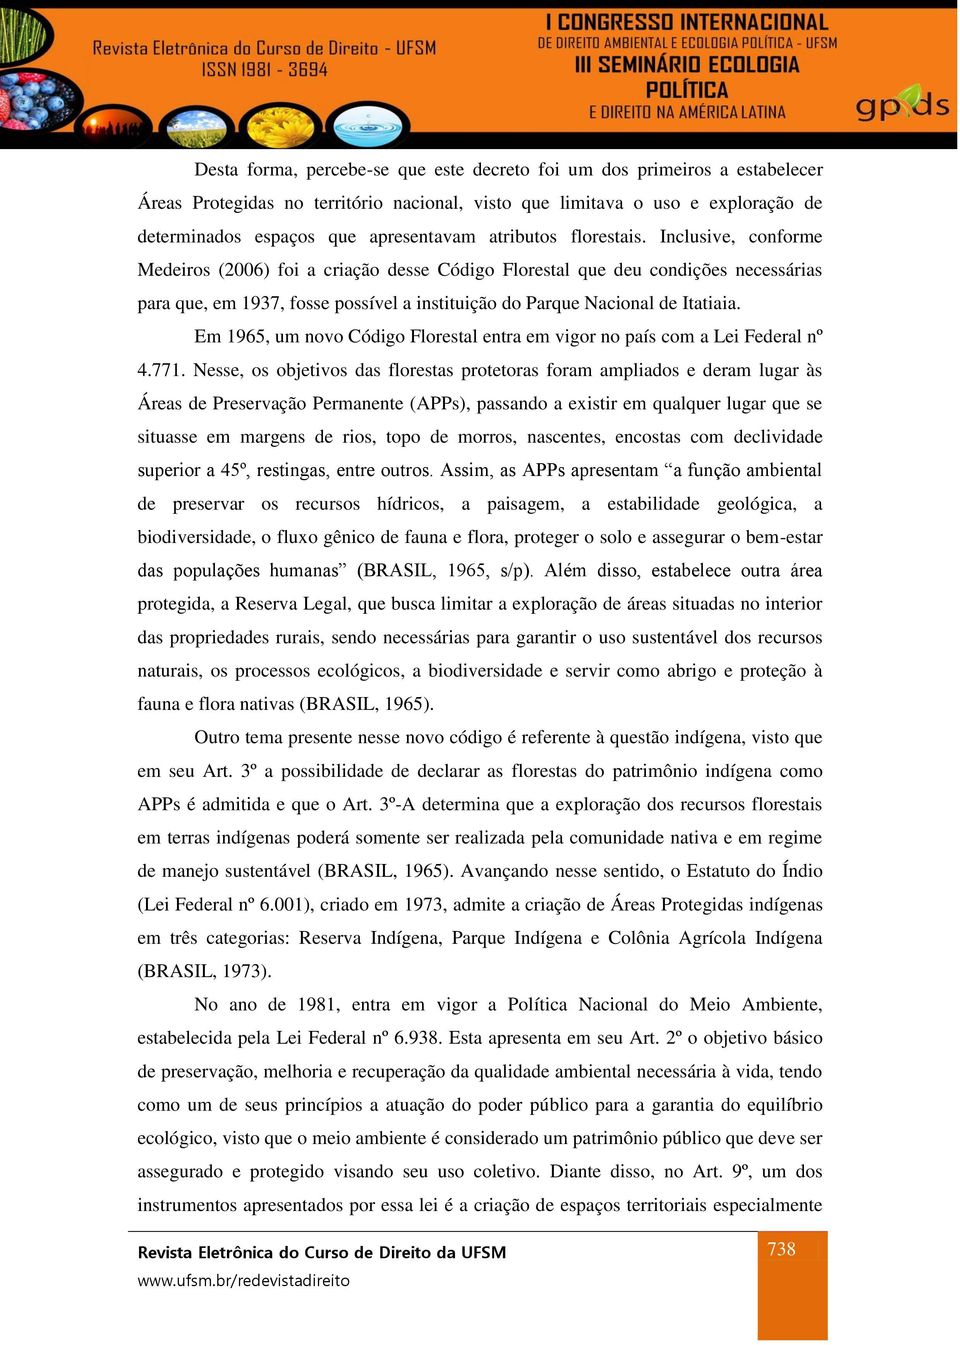 Inclusive, conforme Medeiros (2006) foi a criação desse Código Florestal que deu condições necessárias para que, em 1937, fosse possível a instituição do Parque Nacional de Itatiaia.